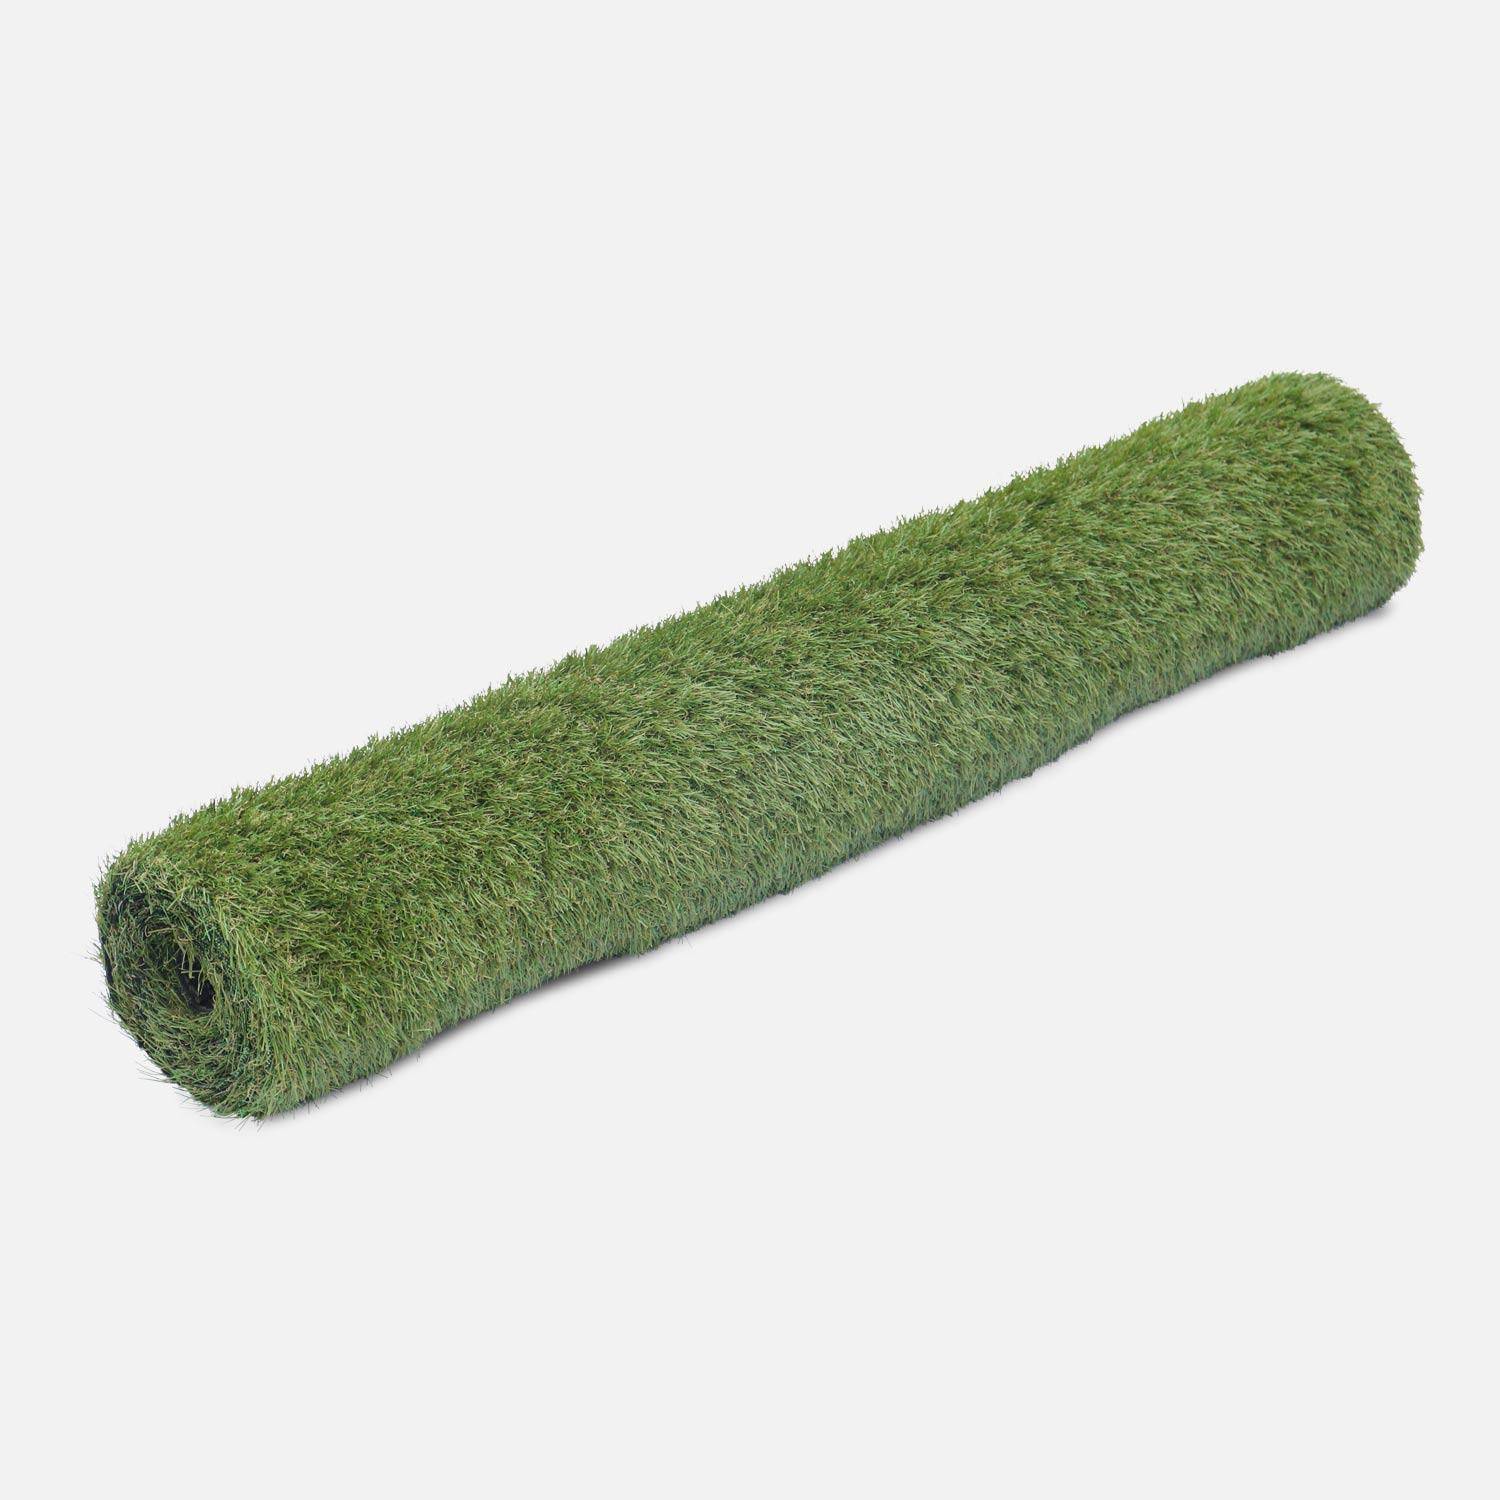 Synthetisch gras 2x5m - Carry - smaragdgroen, kaki groen en beige strengen, 28mm dik Photo2